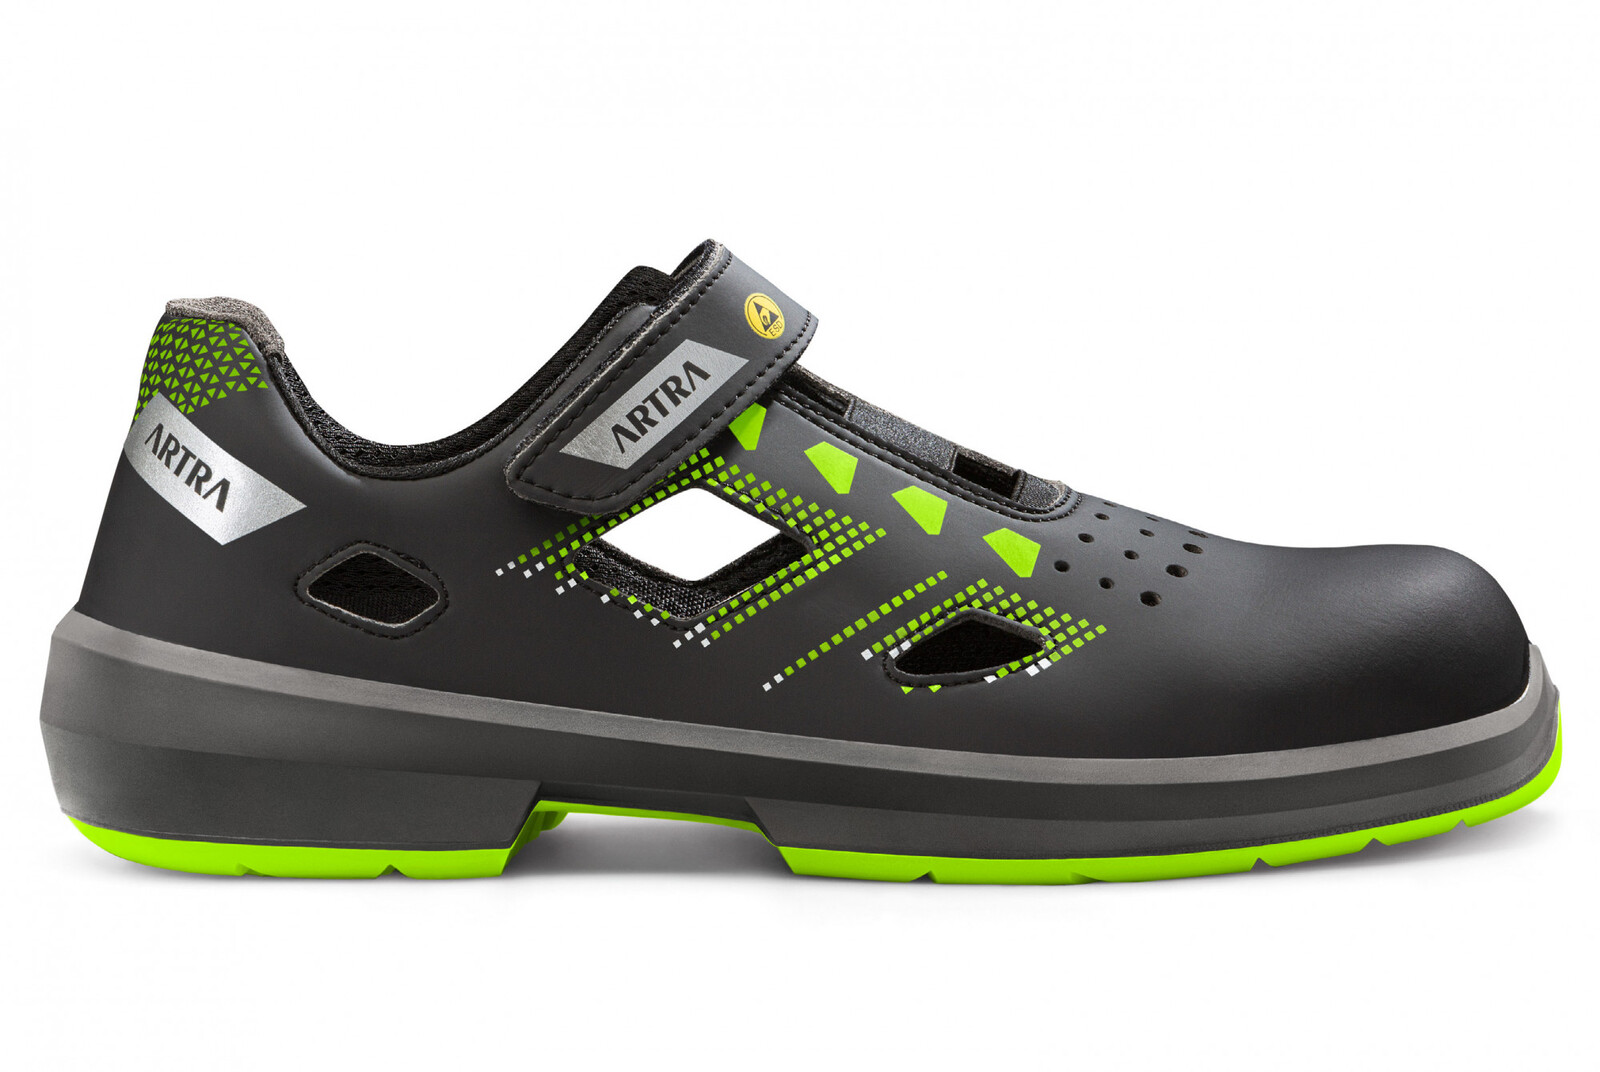 Bezpečnostné sandále Artra Arzo 805 678080 S1 SRC ESD MF - veľkosť: 45, farba: čierna/zelená